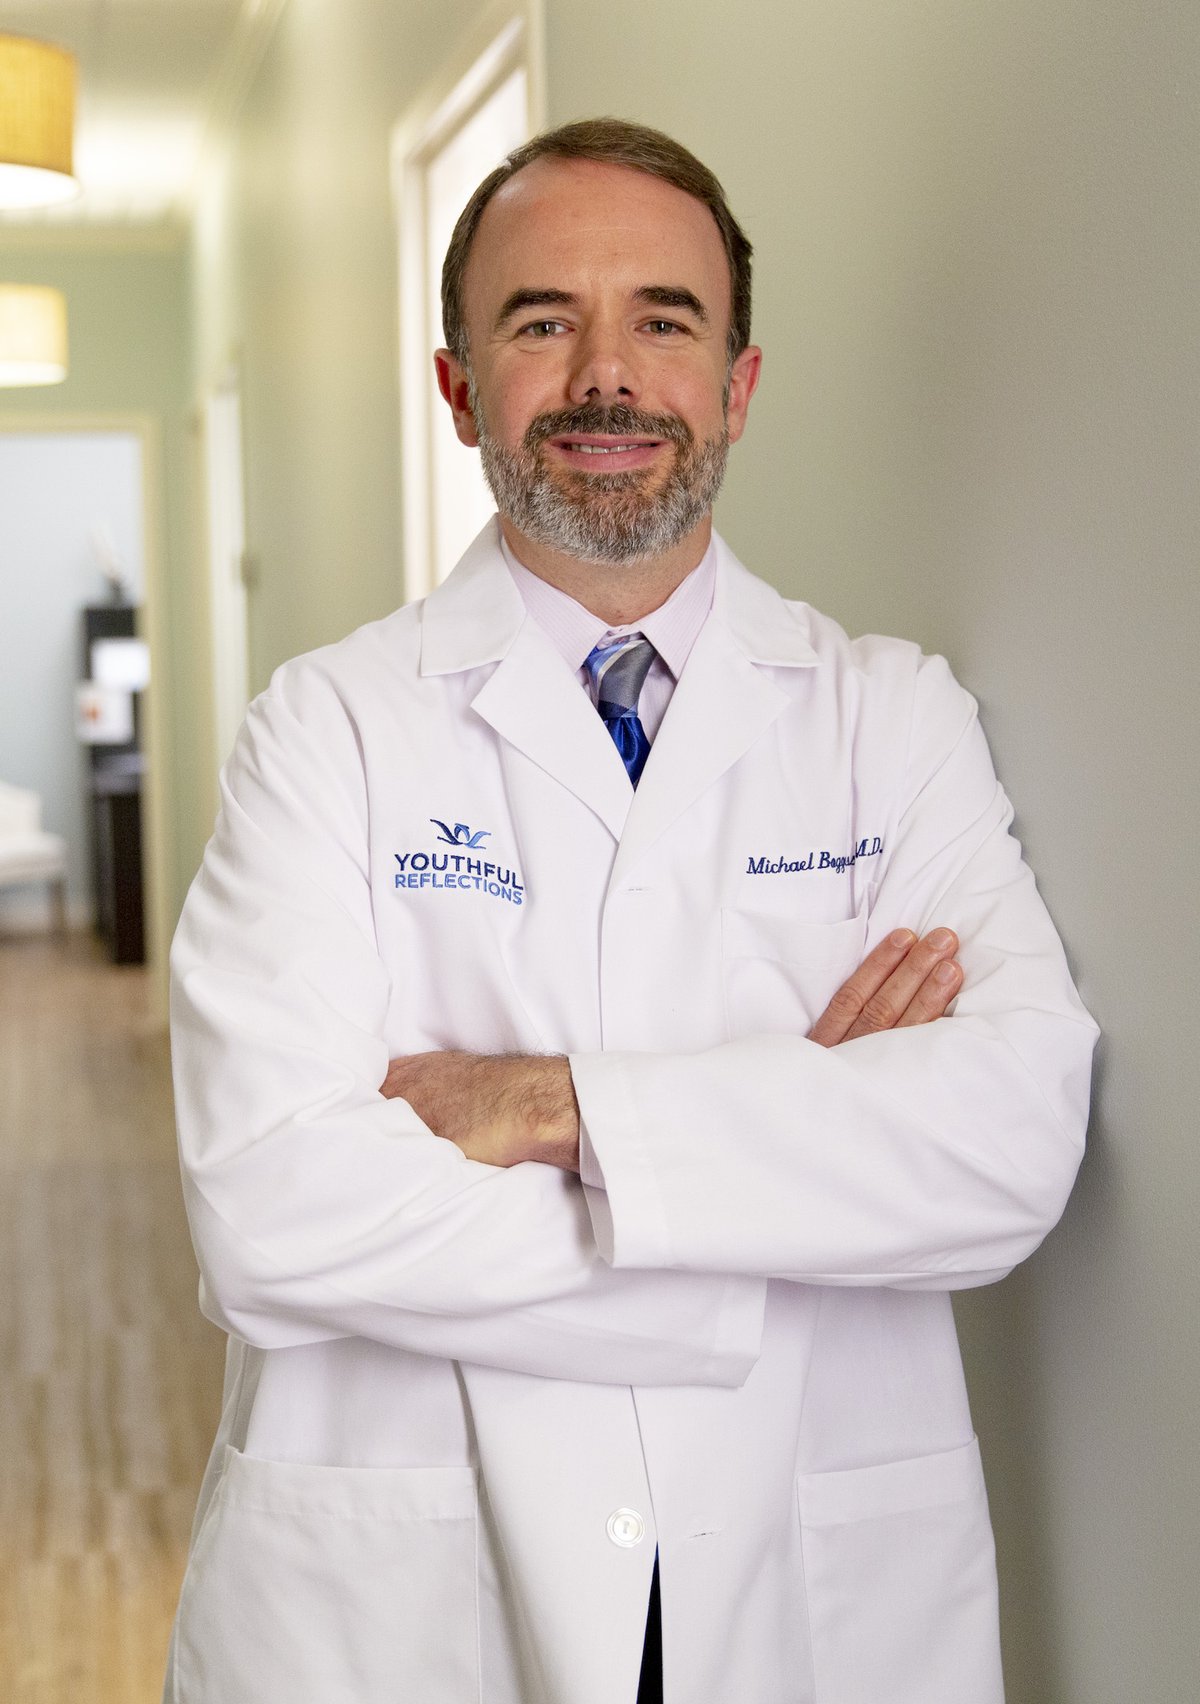 Top Doctors in Nashville Dr. Michael Boggess Nashville Lifestyles